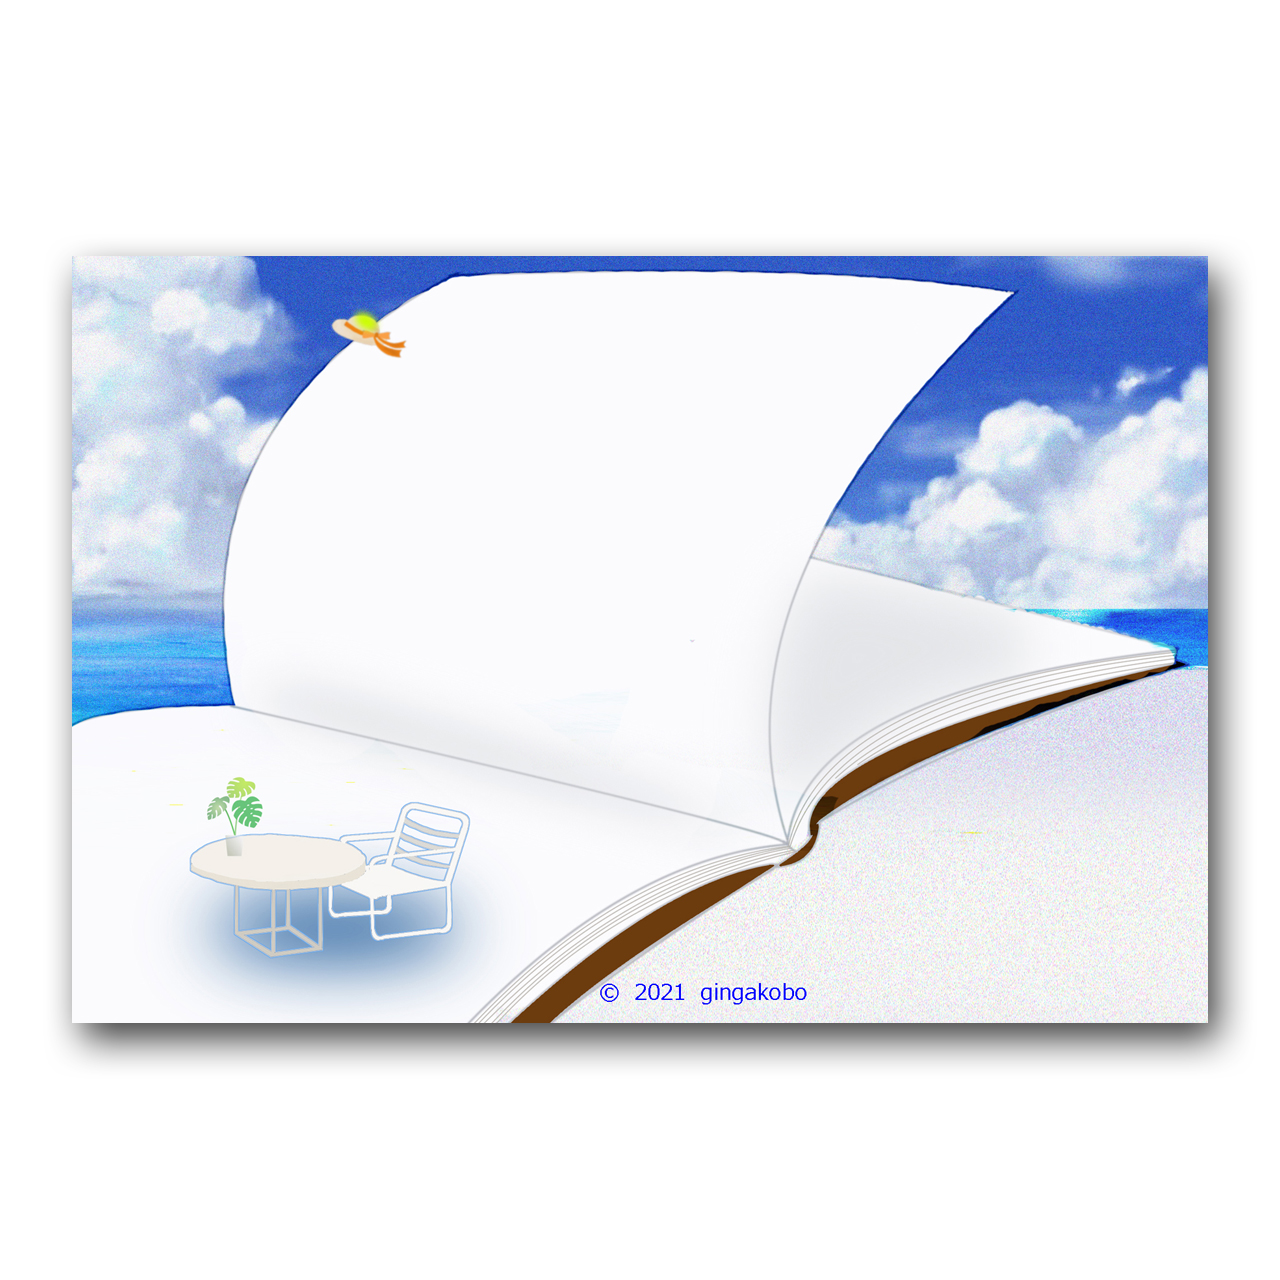 風の誘い声 夏 海 ほっこり癒しのイラストポストカード2枚組no 13 Iichi ハンドメイド クラフト作品 手仕事品の通販